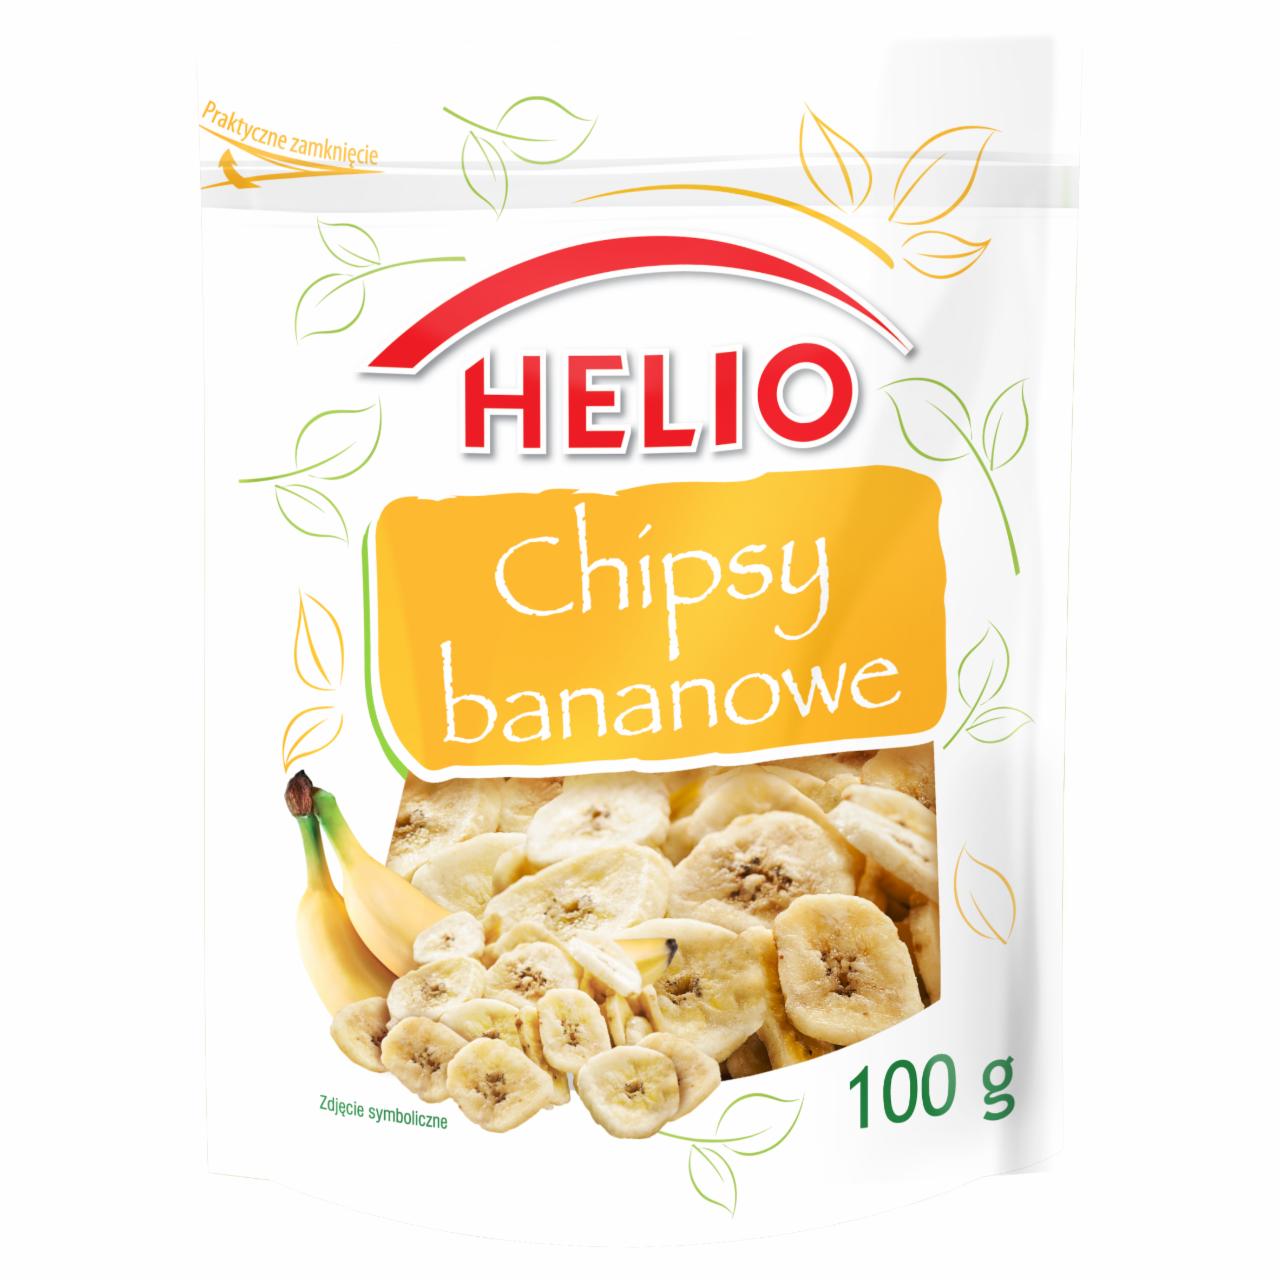 Zdjęcia - Helio Chipsy bananowe 100 g